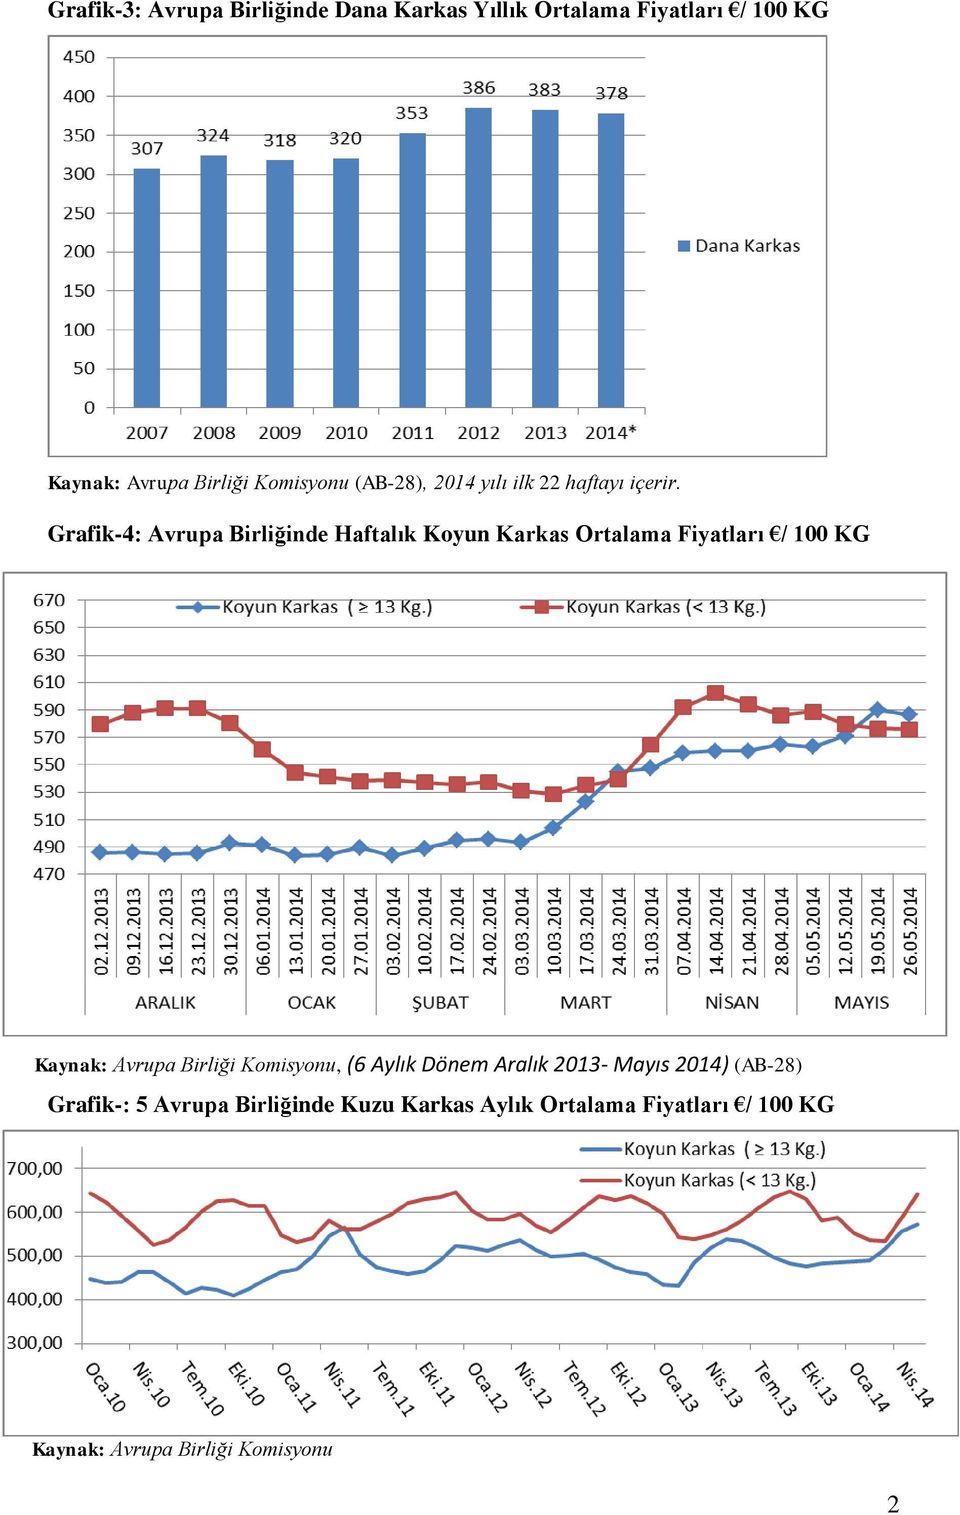 Grafik-4: Avrupa Birliğinde Haftalık Koyun Karkas Ortalama Fiyatları / 100 KG Kaynak: Avrupa Birliği